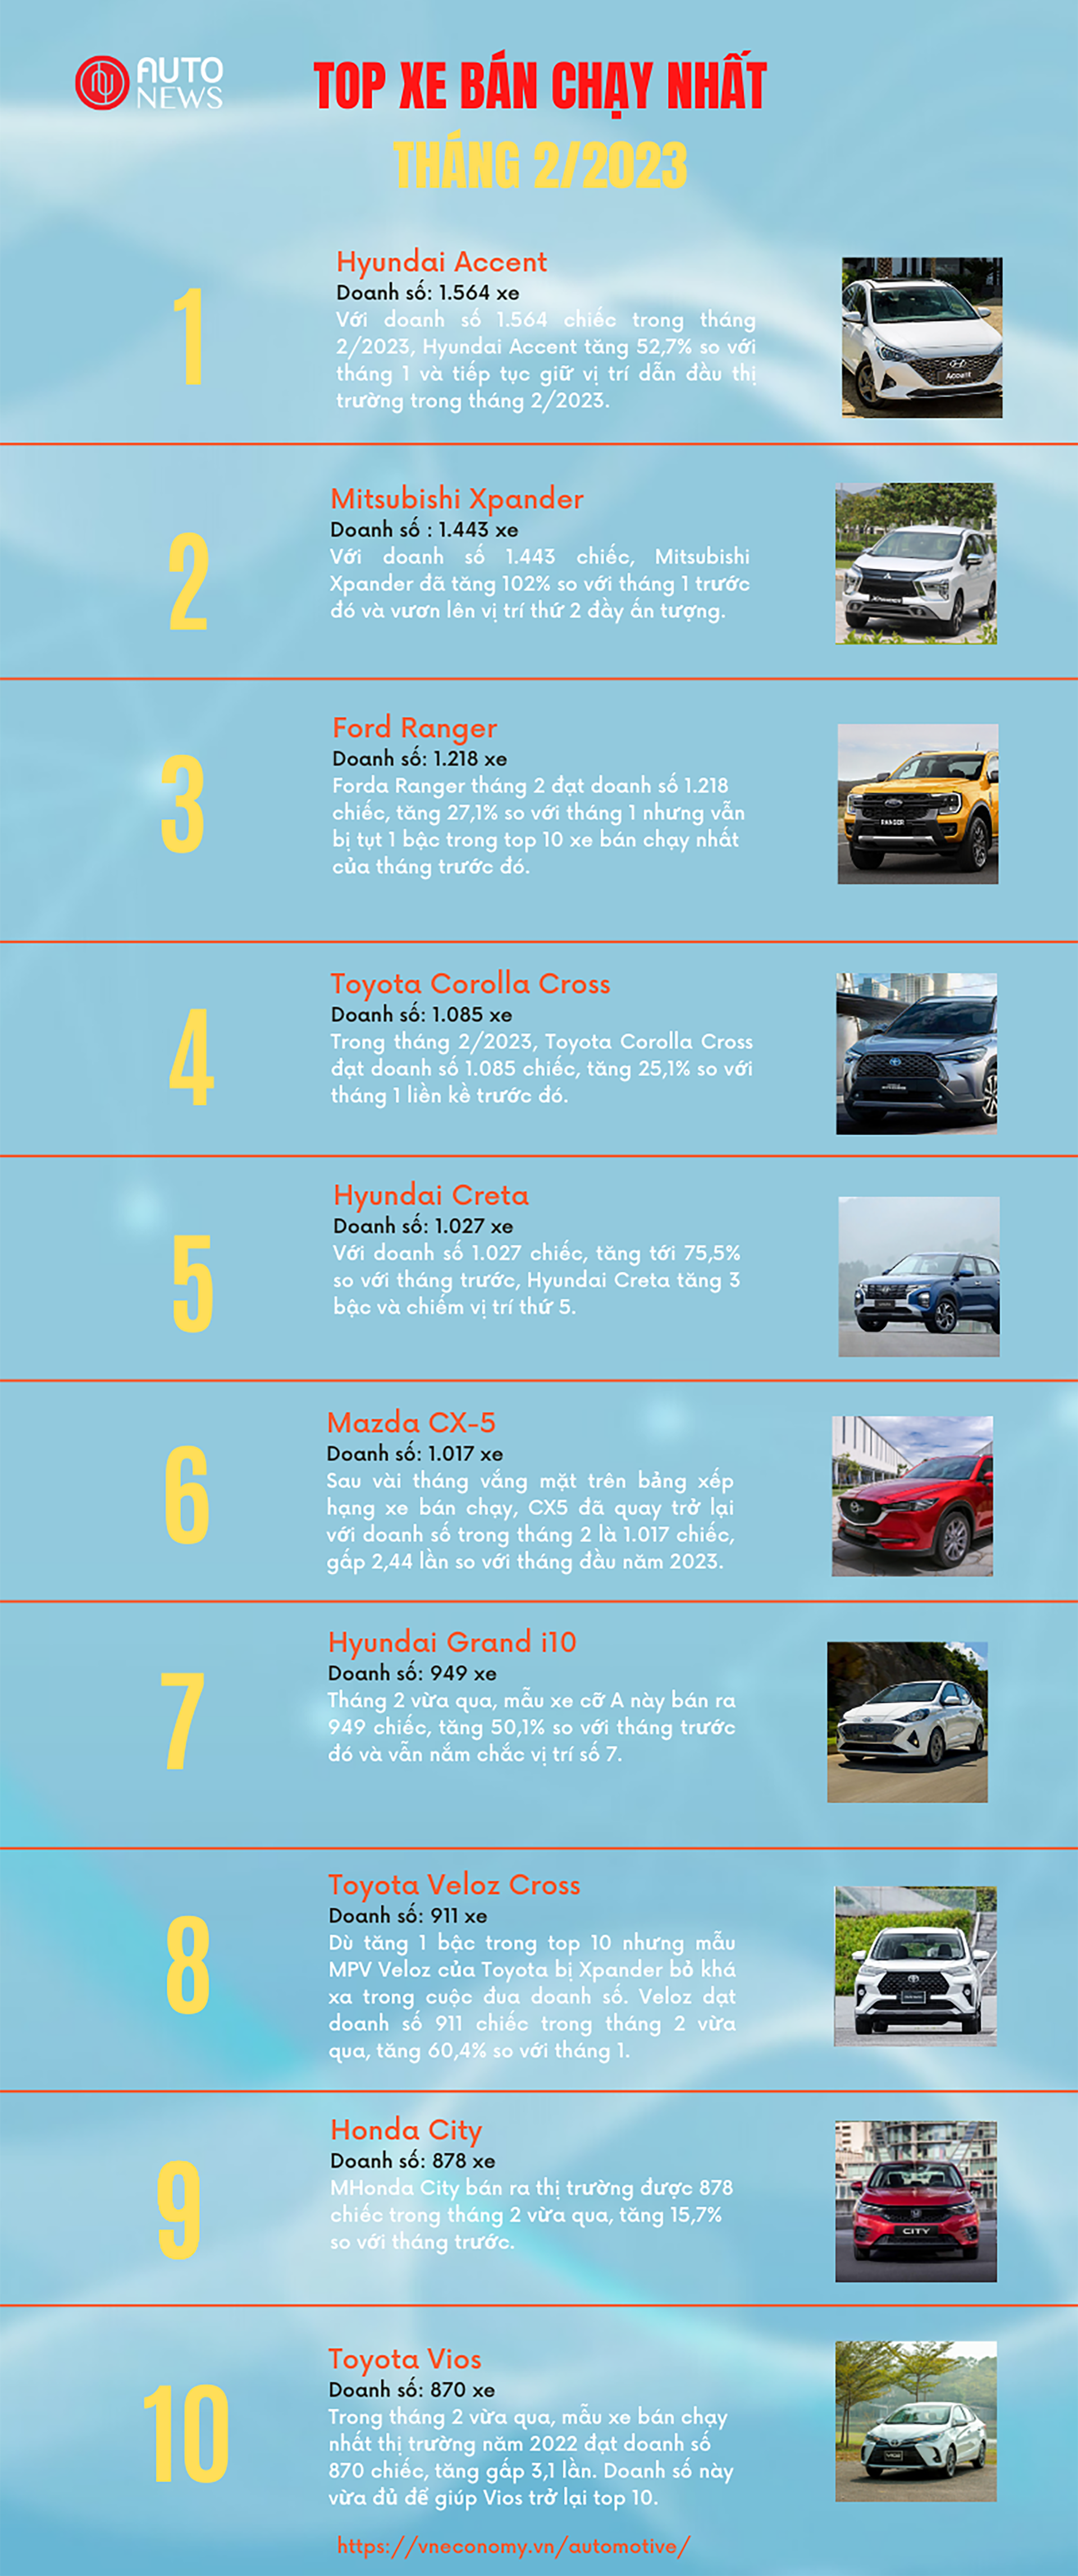 Top 10 xe bán chạy nhất tháng 2/2023 tại Việt Nam - Ảnh 1